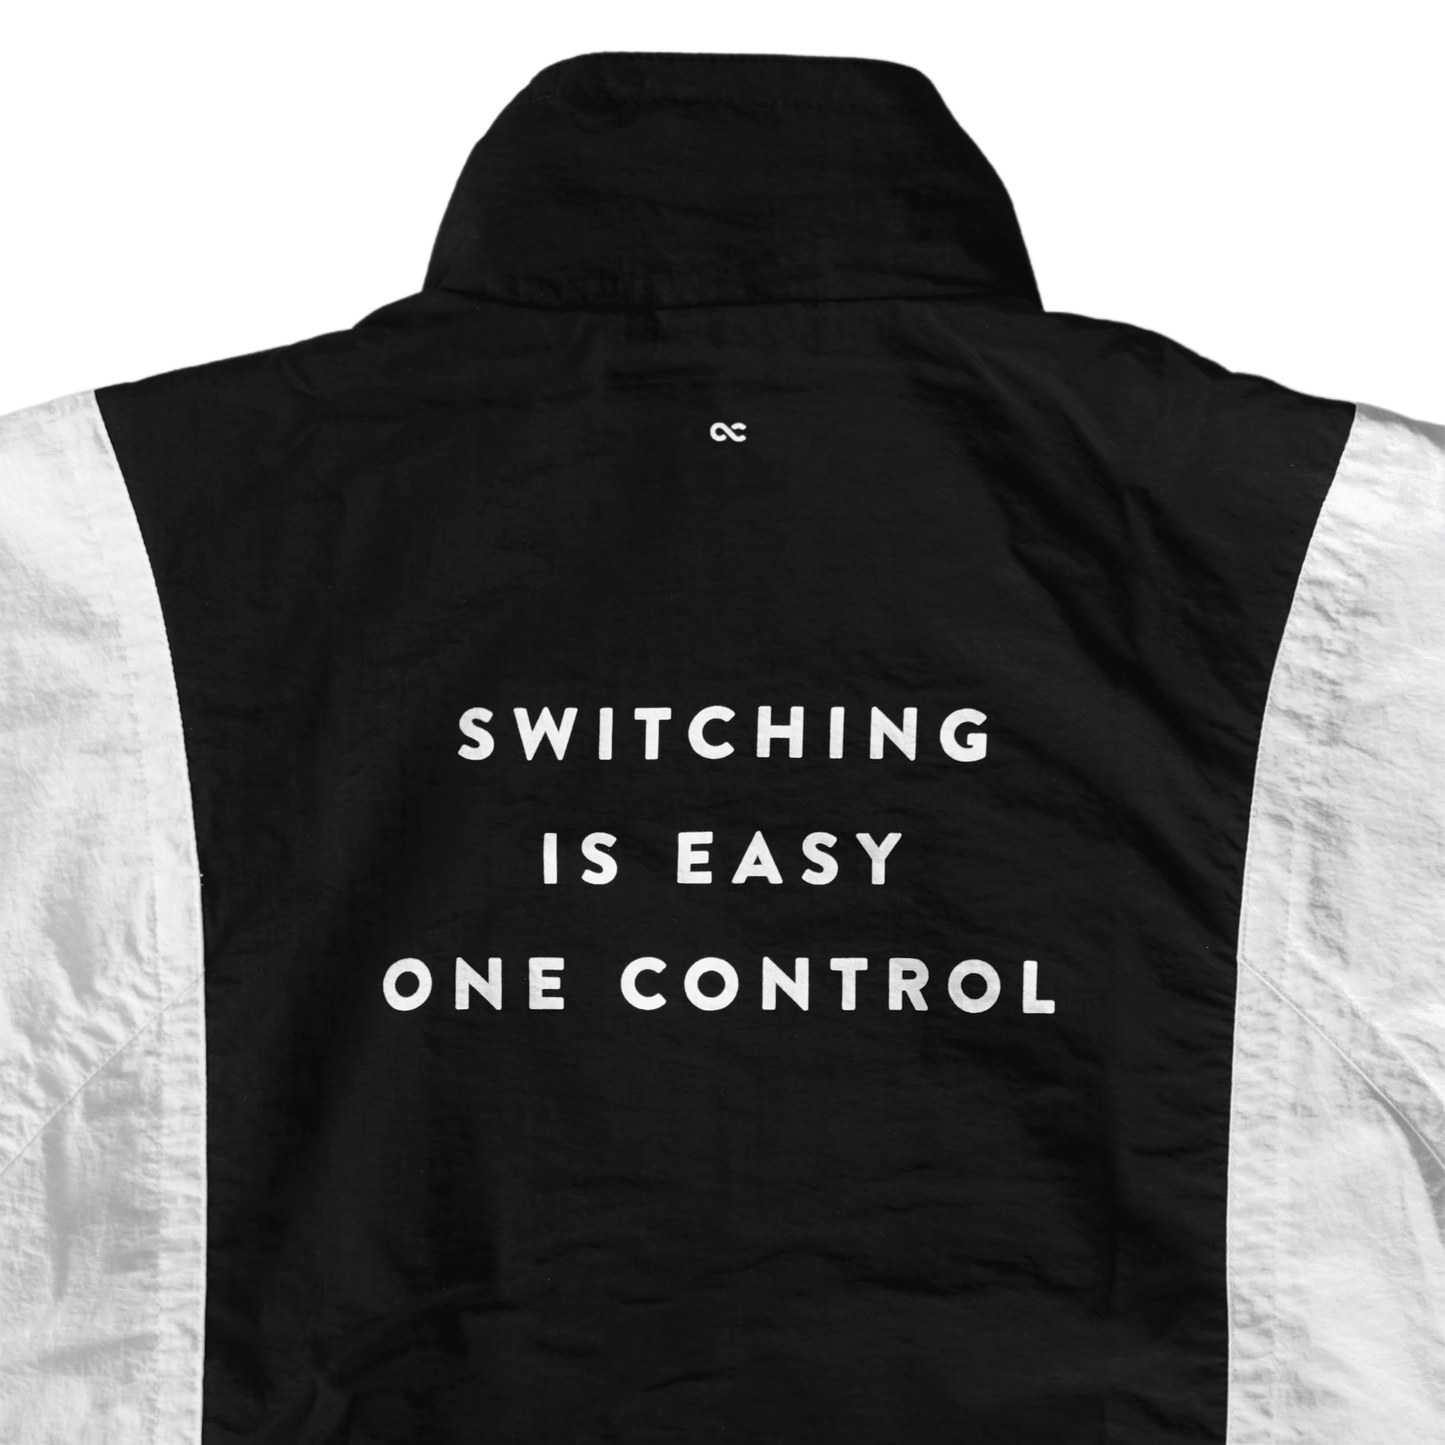 One Control / ロゴ入りトラックジャケット ブラック